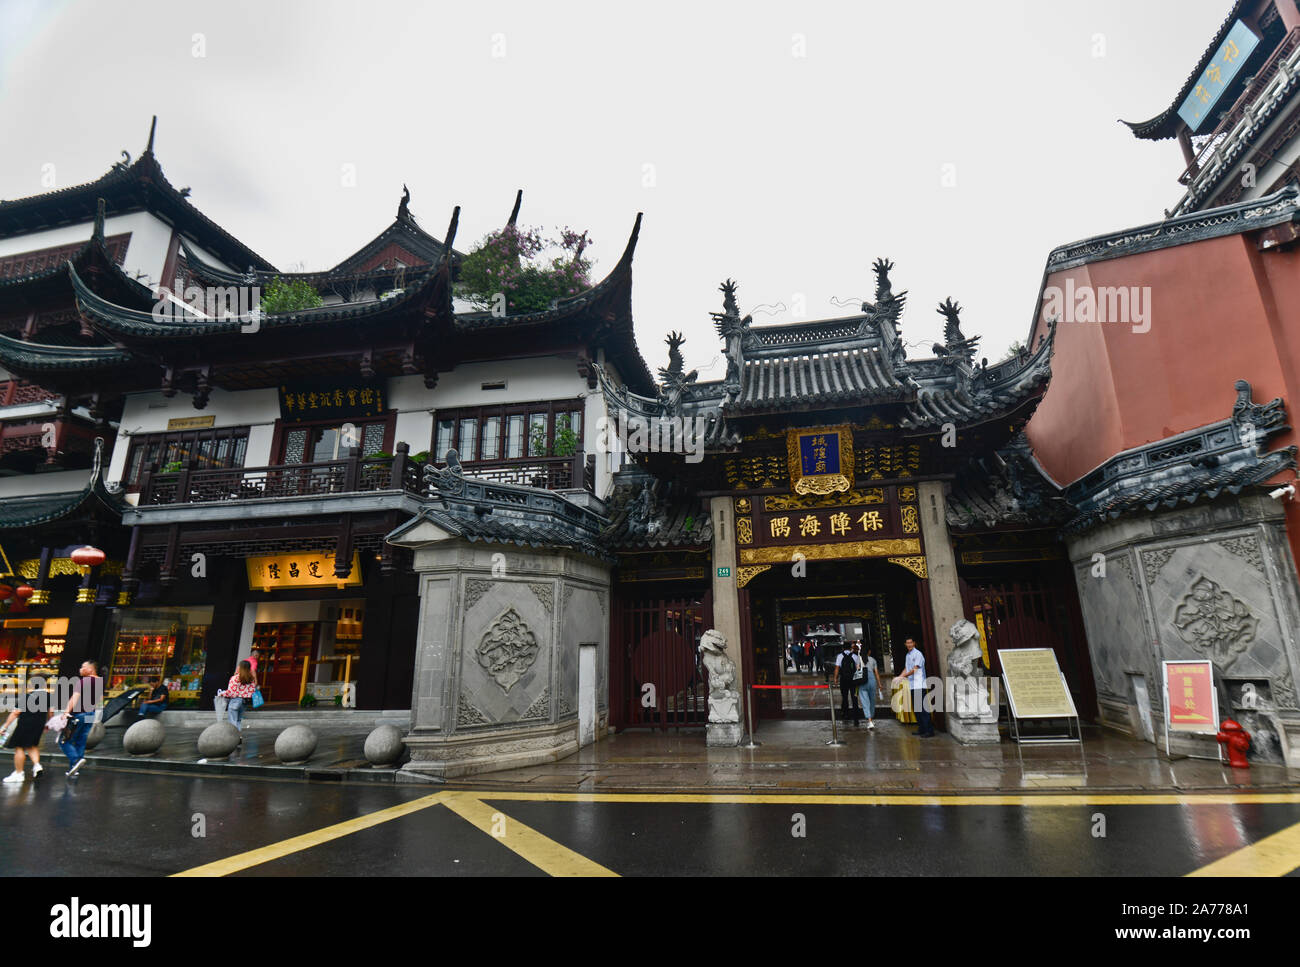 City God Temple of Shanghai, China. Main entrance Stock Photo